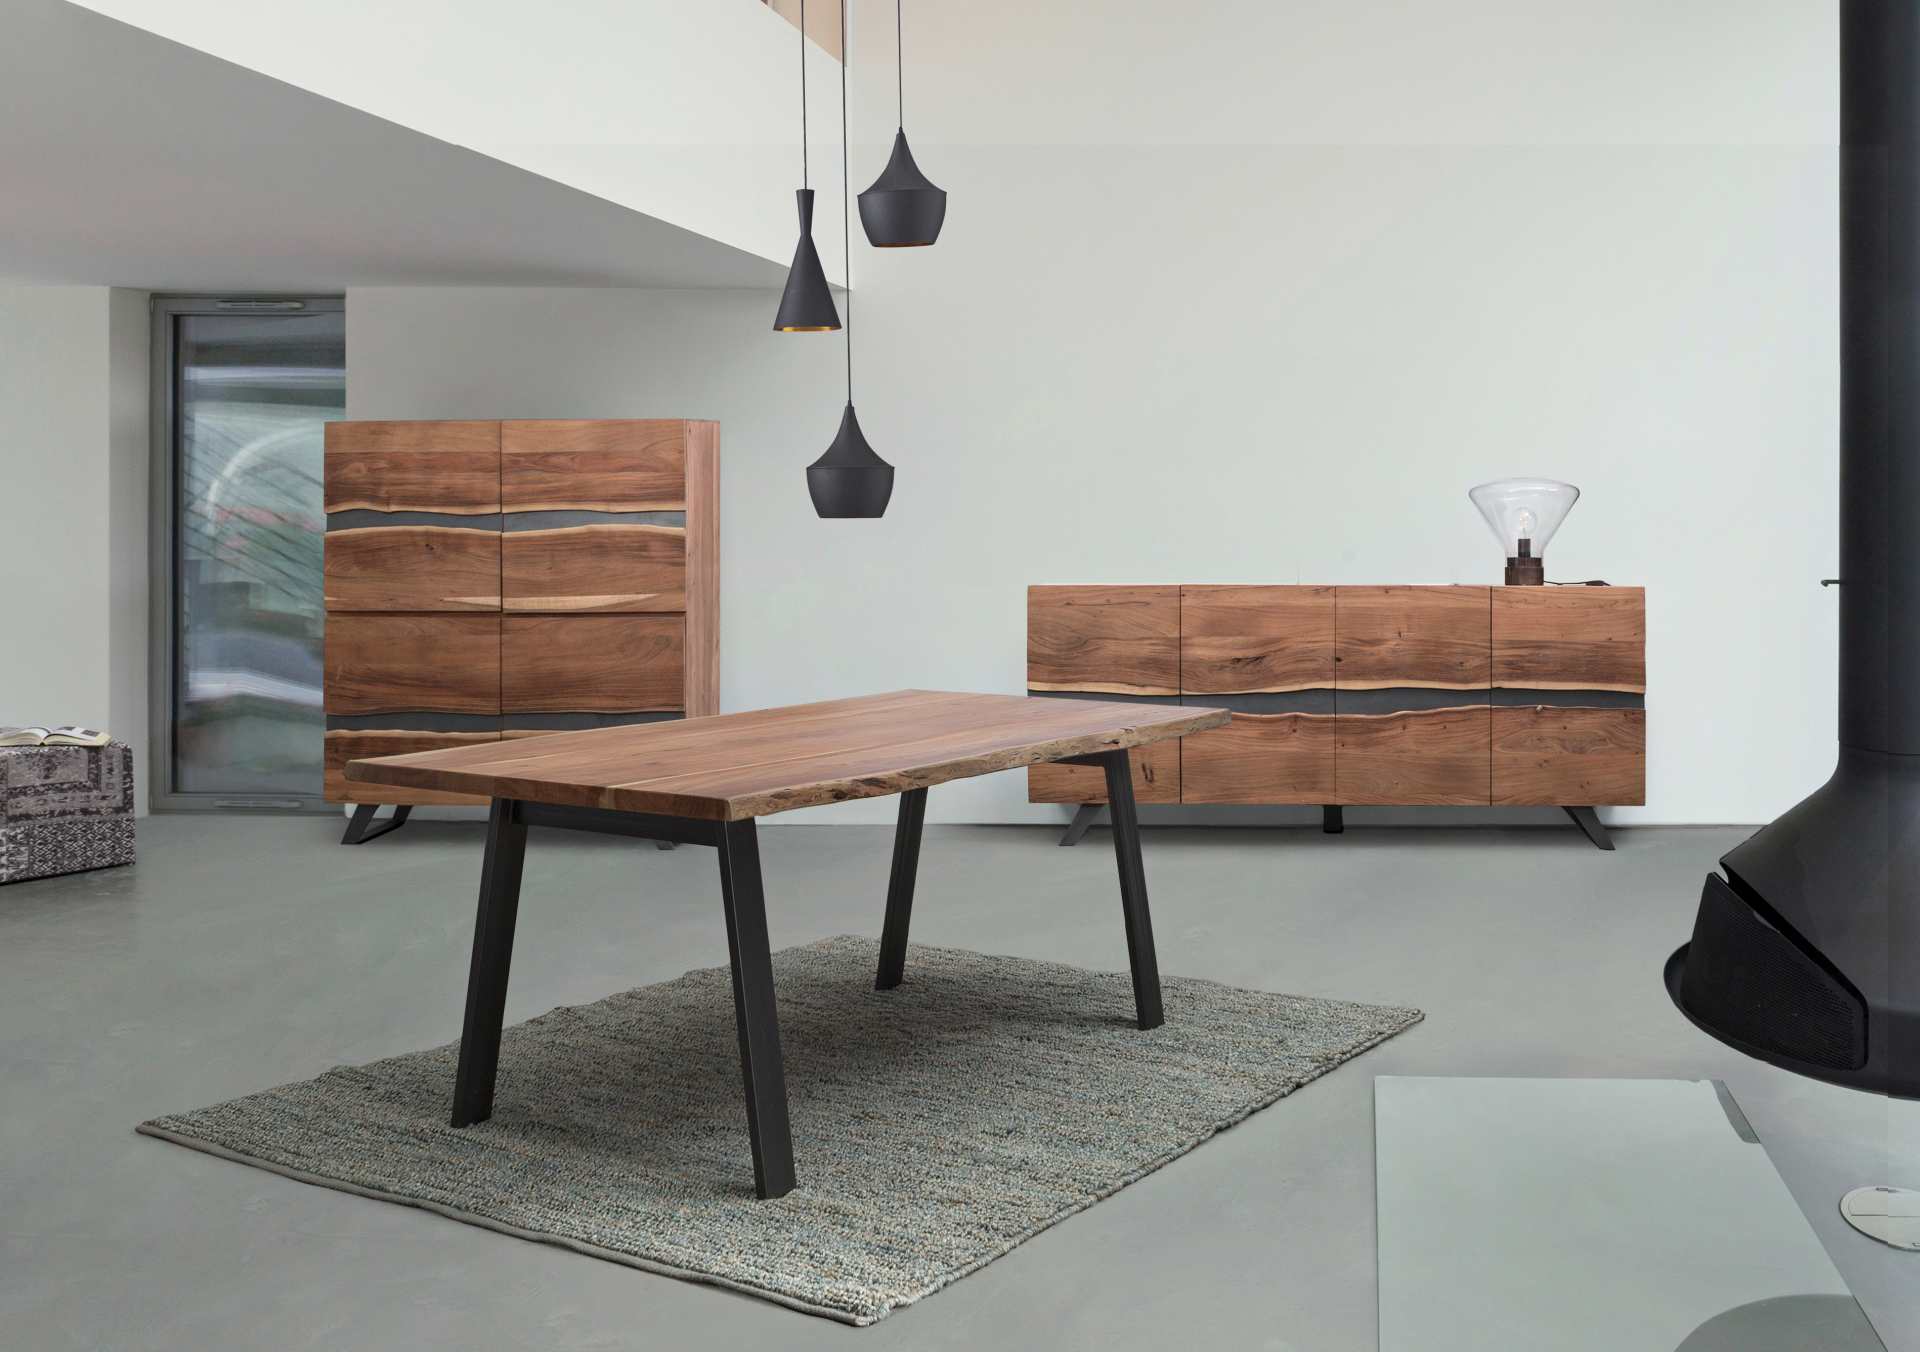 Der Esstisch Aron überzeugt mit seinem moderndem Design gefertigt wurde er aus Akazienholz, welches einen natürlichen Farbton besitzt. Das Gestell des Tisches ist aus Metall und ist Schwarz. Der Tisch besitzt eine Breite von 200 cm.